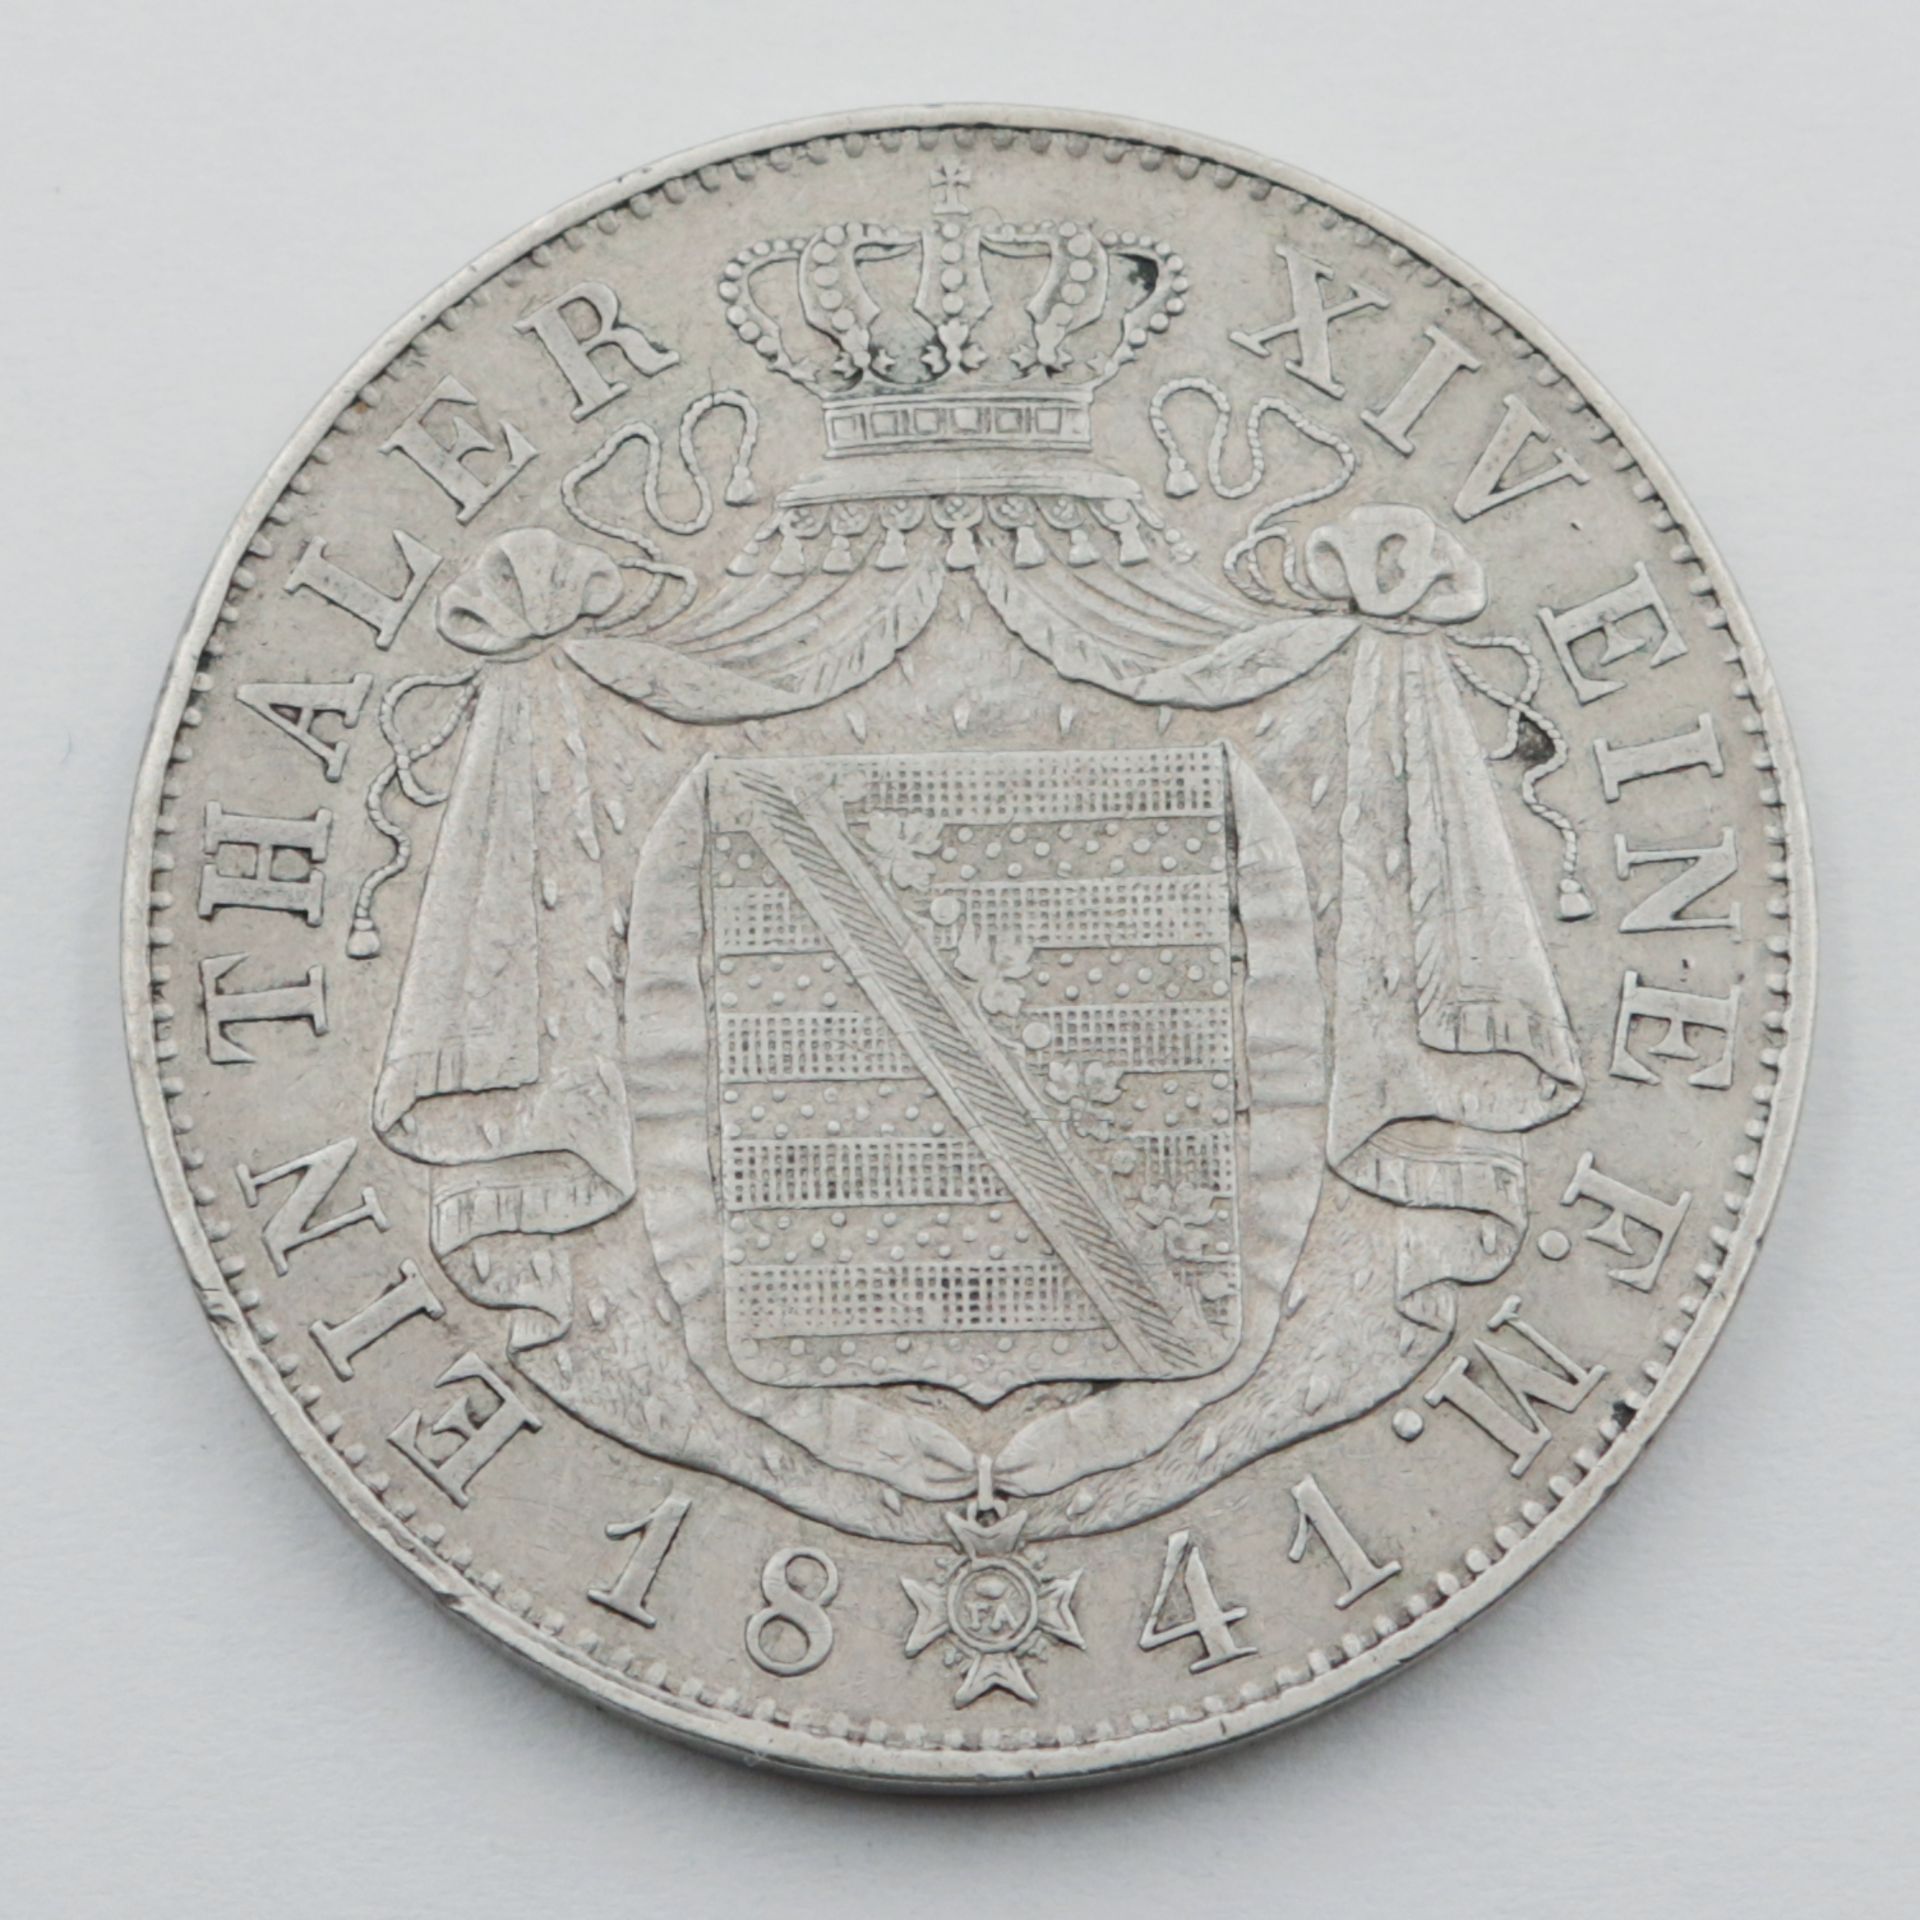 Sachsen Silbermünze, 1Thaler 1841/G, Sachsen-Albertinische Linie Friedrich August II (1836 - 1854), - Bild 2 aus 2